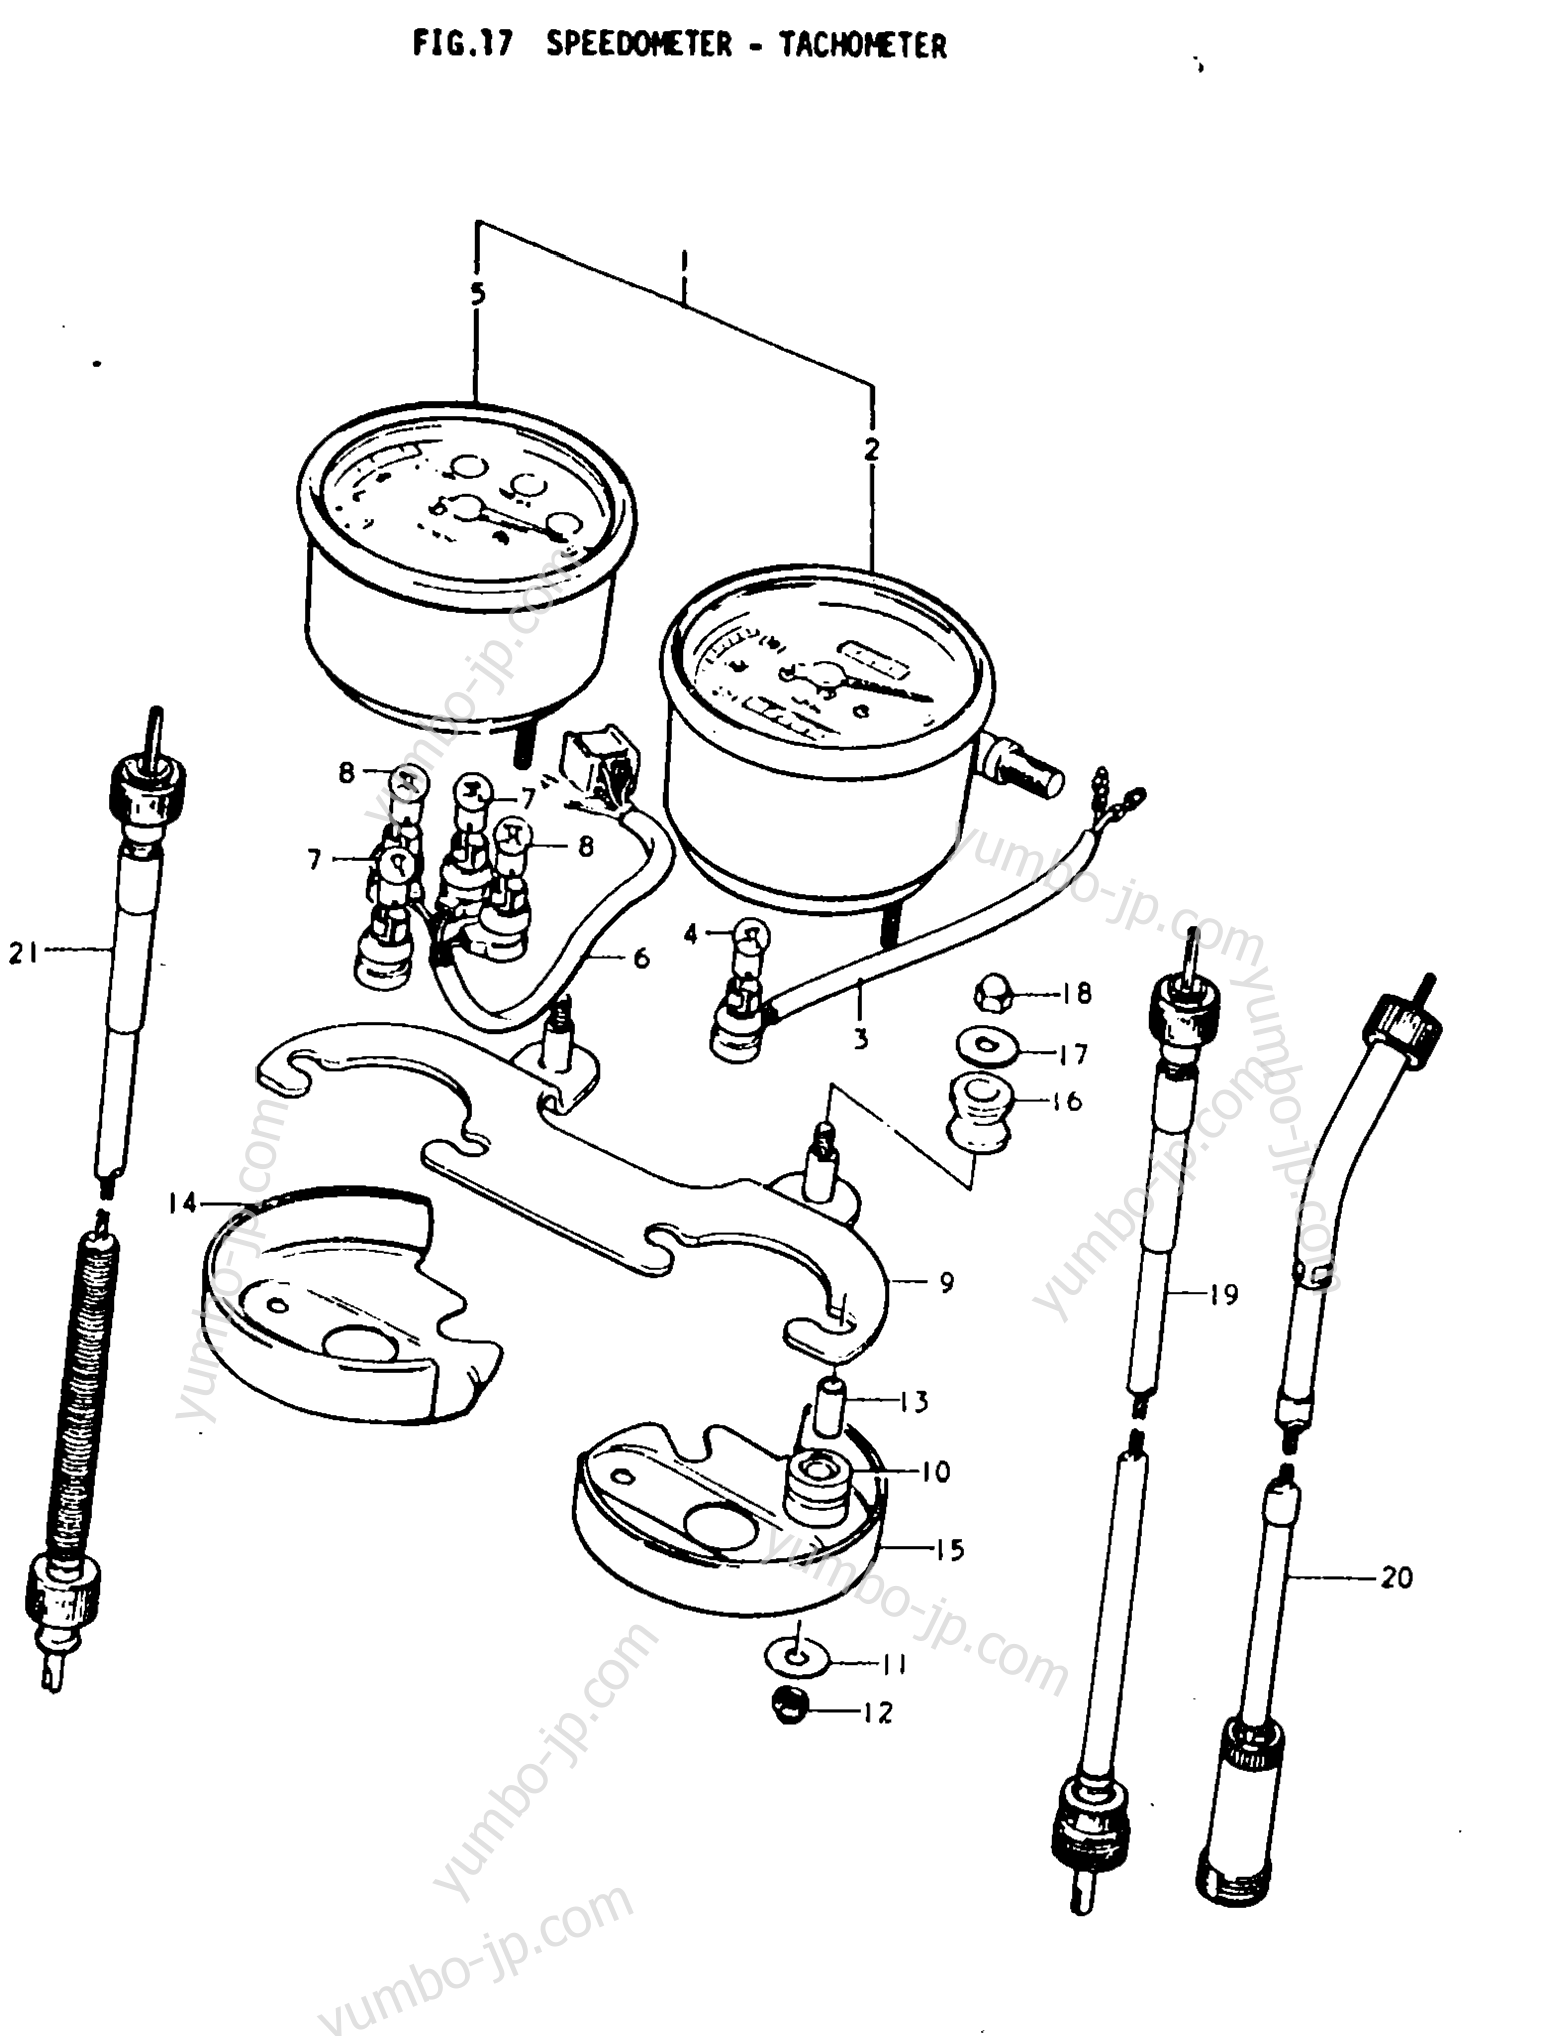 Speedometer - Tachometer for motorcycles SUZUKI TS250 1979 year